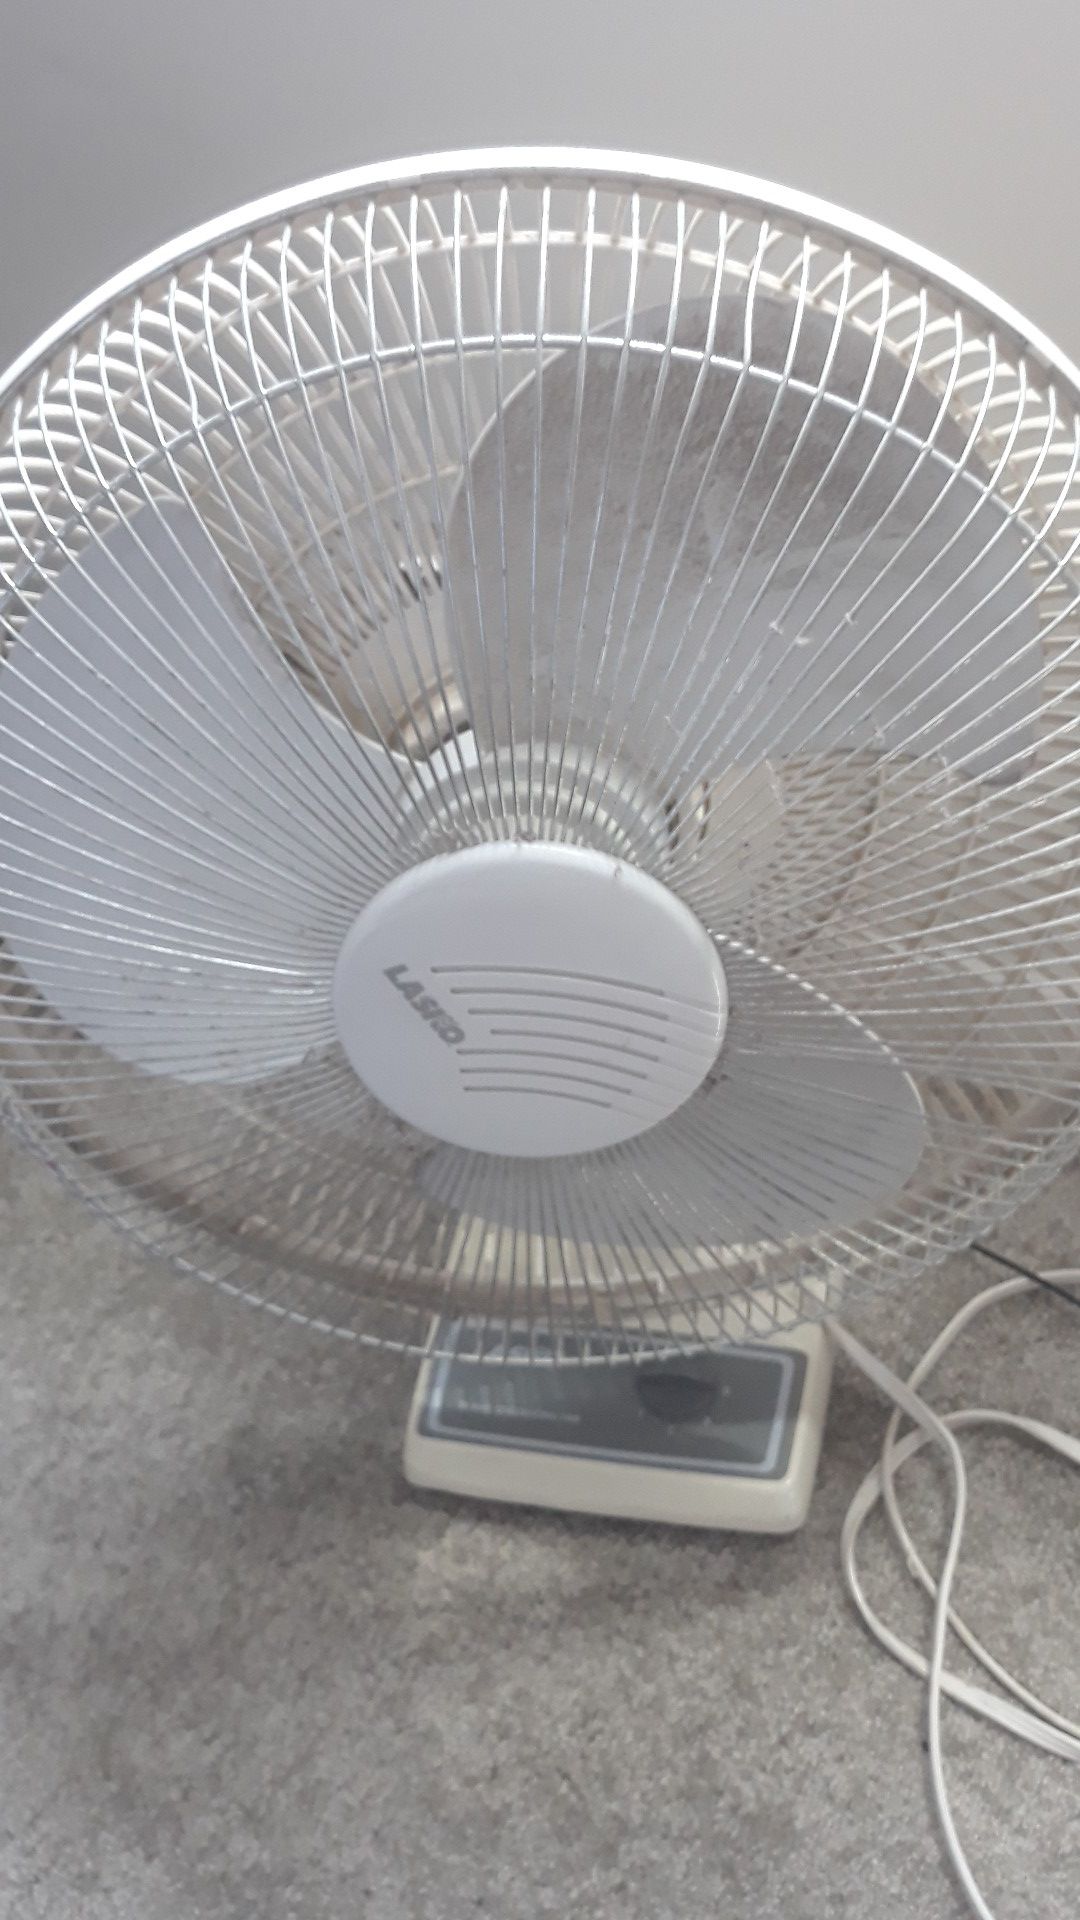 16 Inch Oscillating Fan